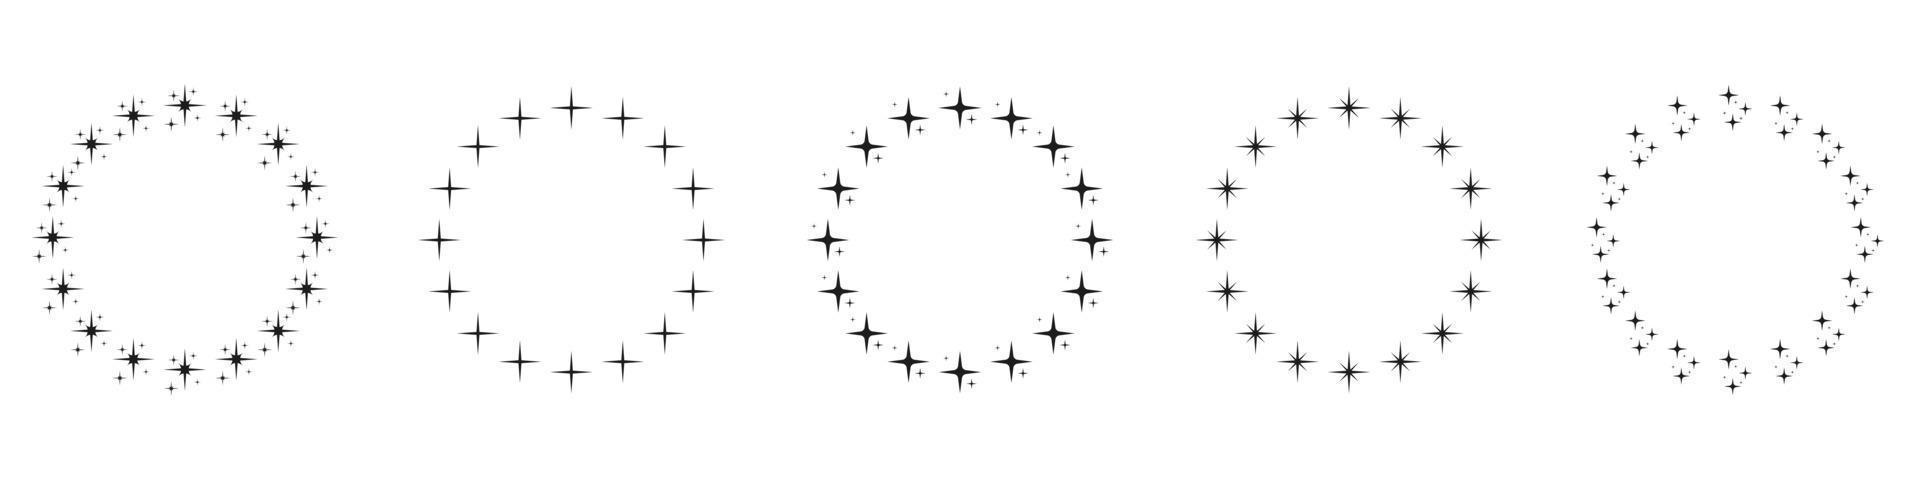 estrelas no conjunto de ícones de silhueta de forma de círculo. ícone circular do ornamento da decoração no fundo branco. quadro de prêmio redondo moderno com pictograma de estrelas negras. ilustração vetorial isolada. vetor